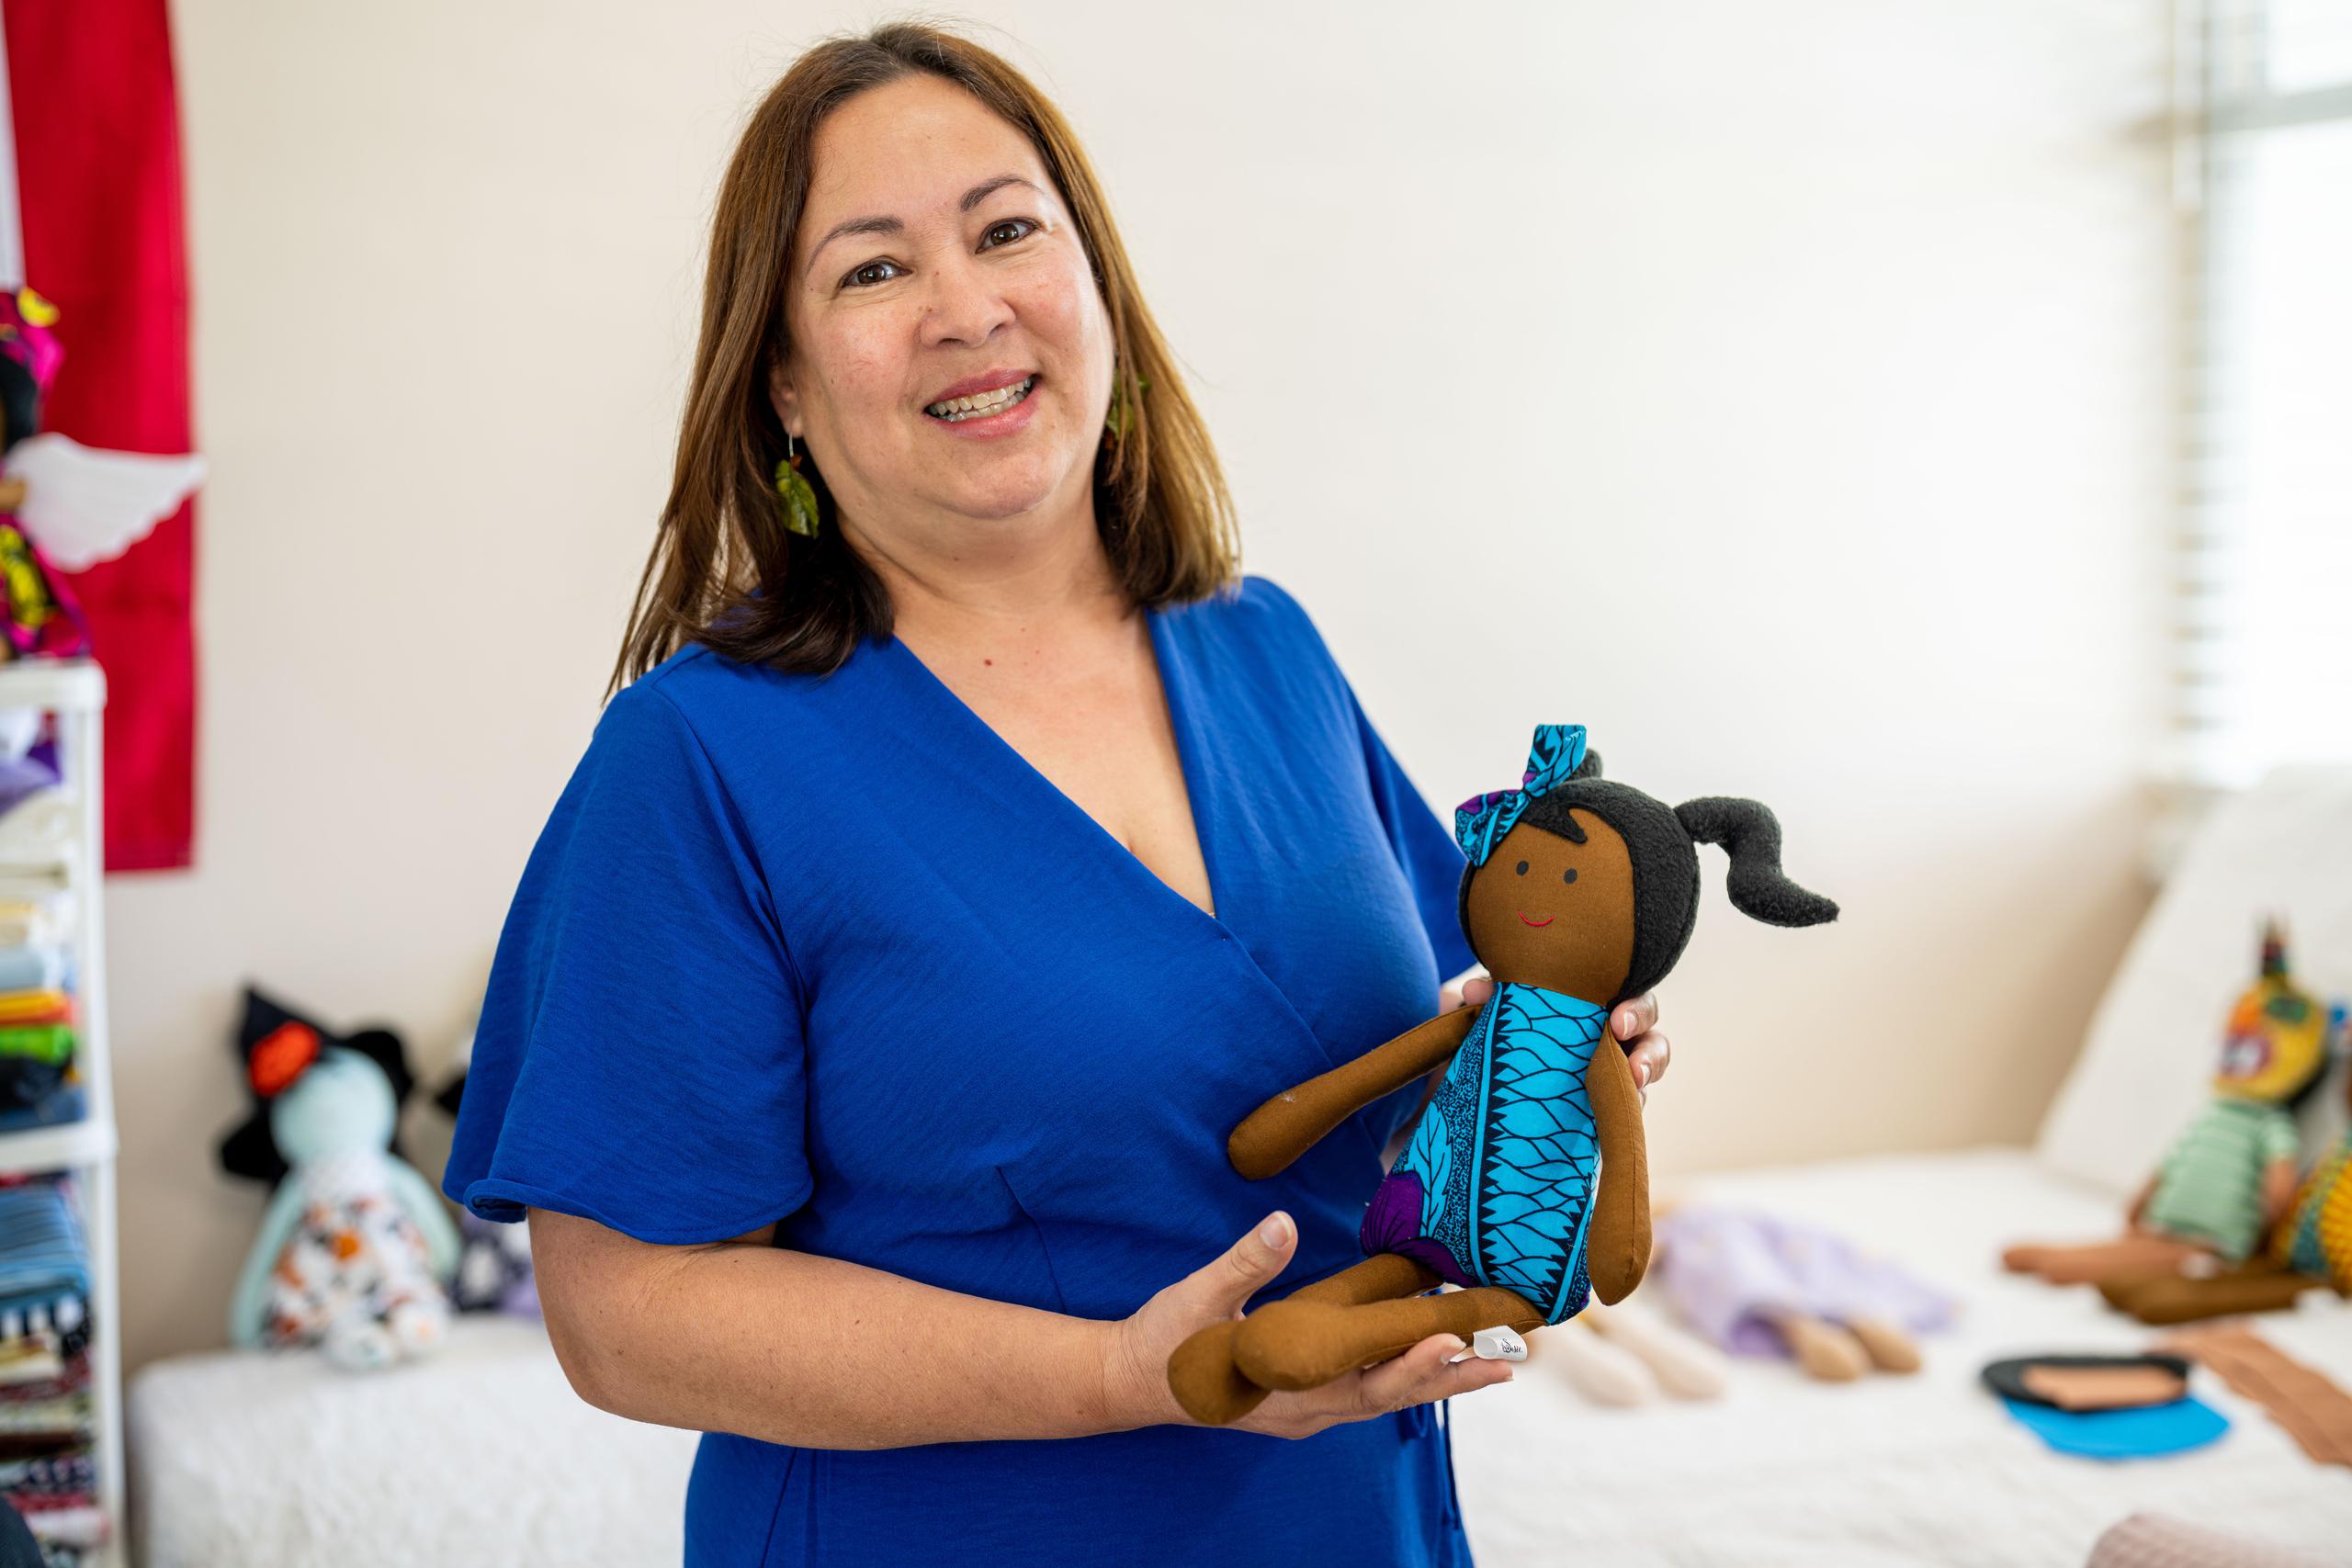 Susan Vázquez busca representar la inclusión de todas las mujeres con sus muñecas de trapo.